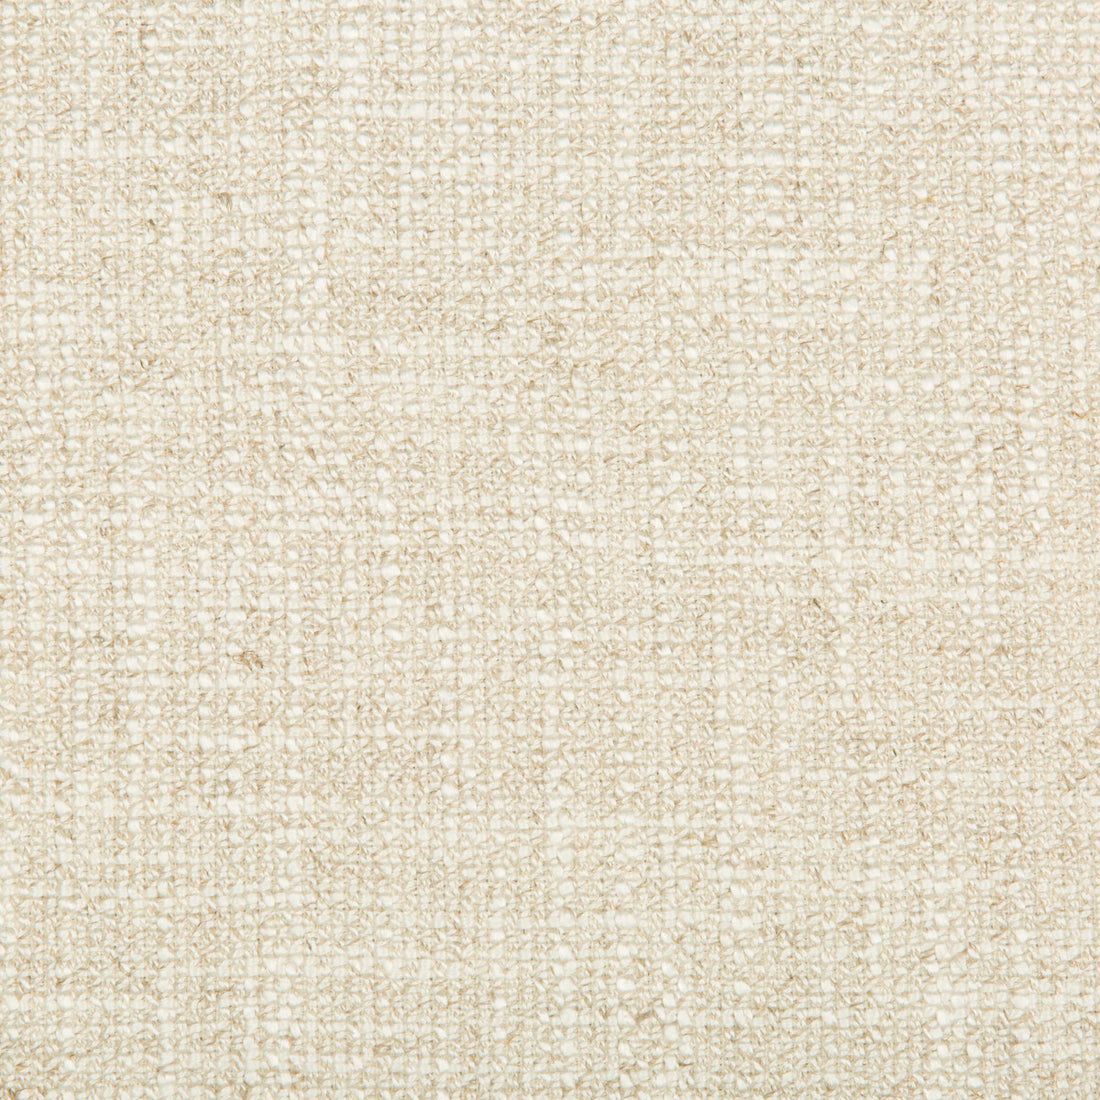 Kravet Basics fabric in 35190-116 color - pattern 35190.116.0 - by Kravet Basics